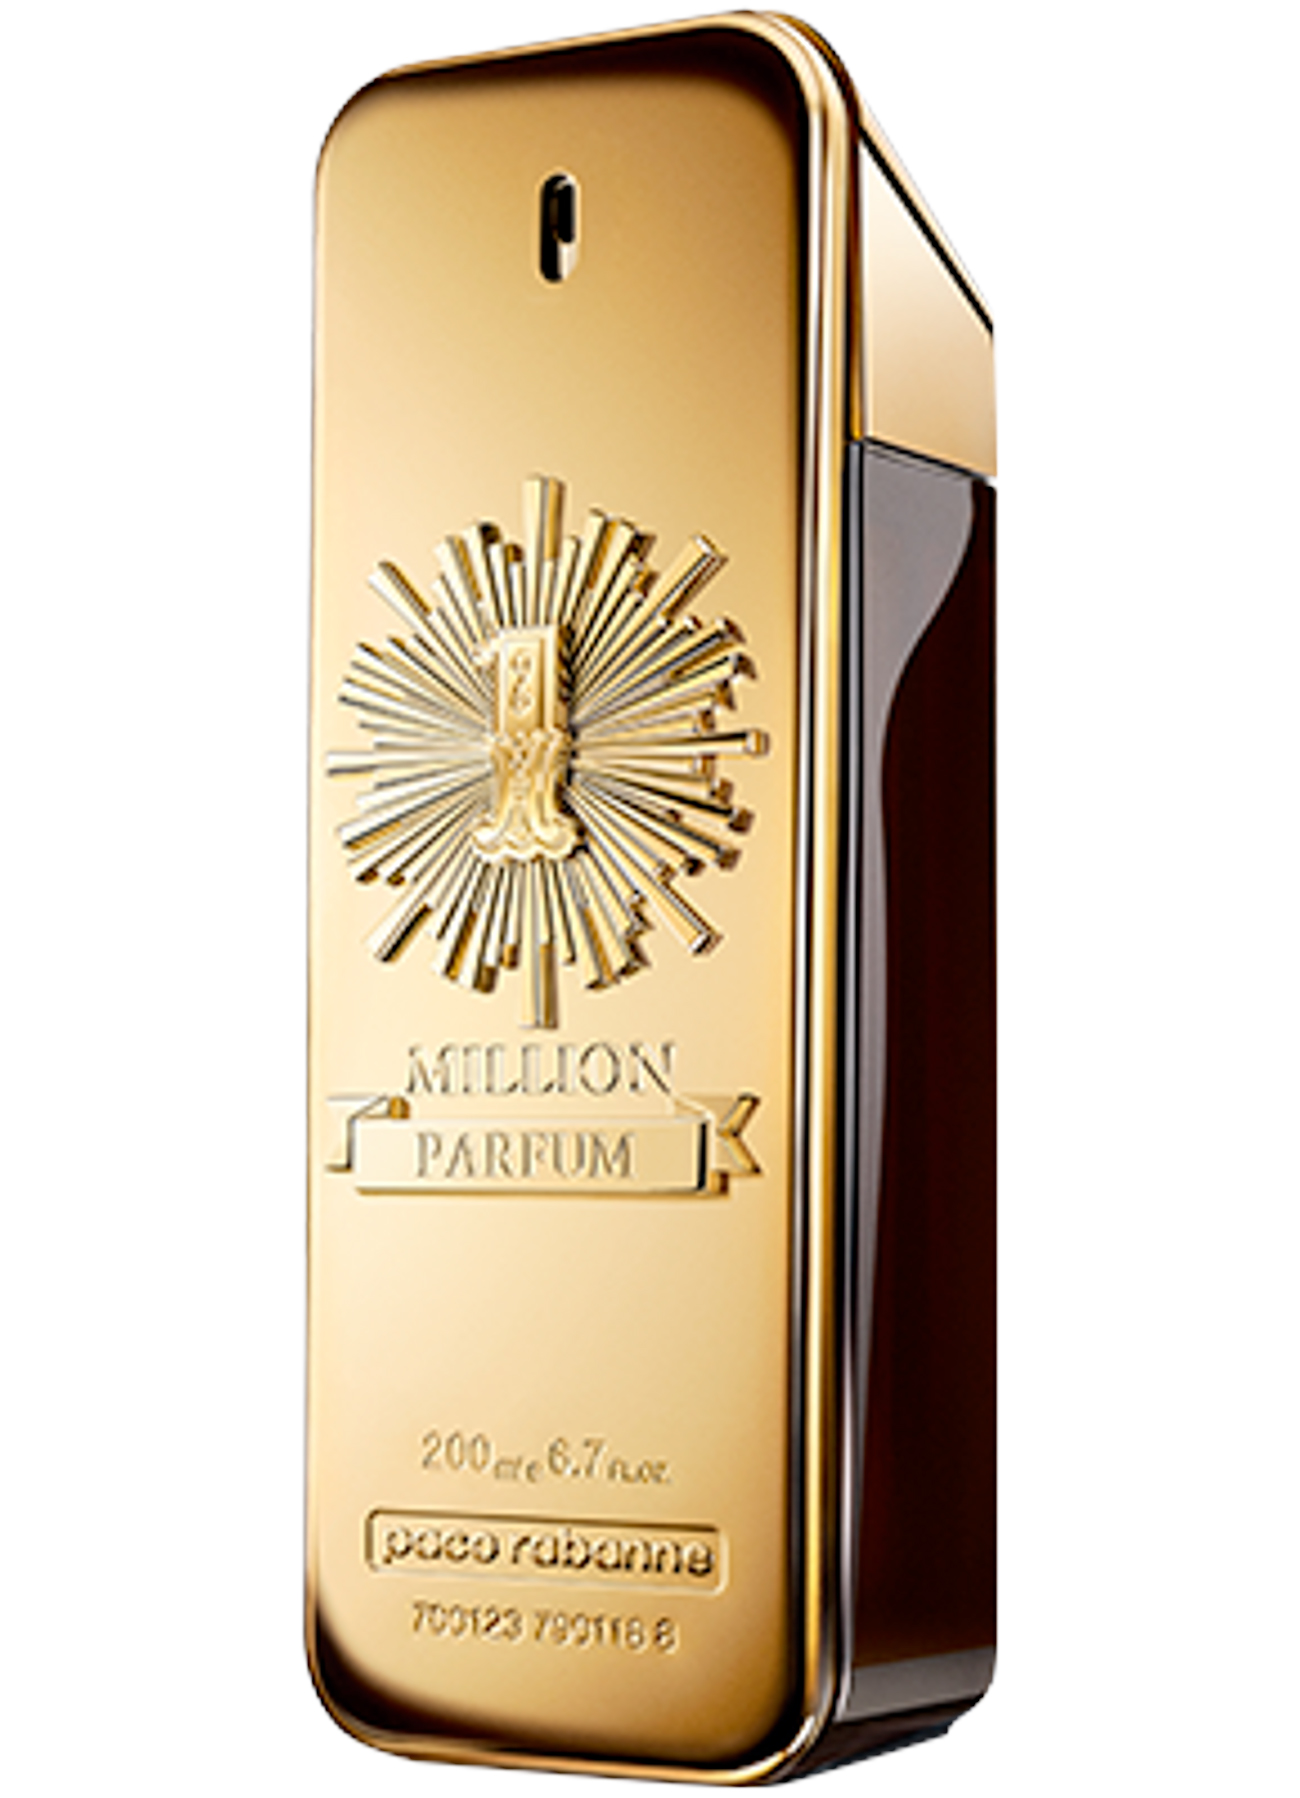 1 Million Parfum Paco Rabanne Cologne - ein neues Parfum für Männer 2020